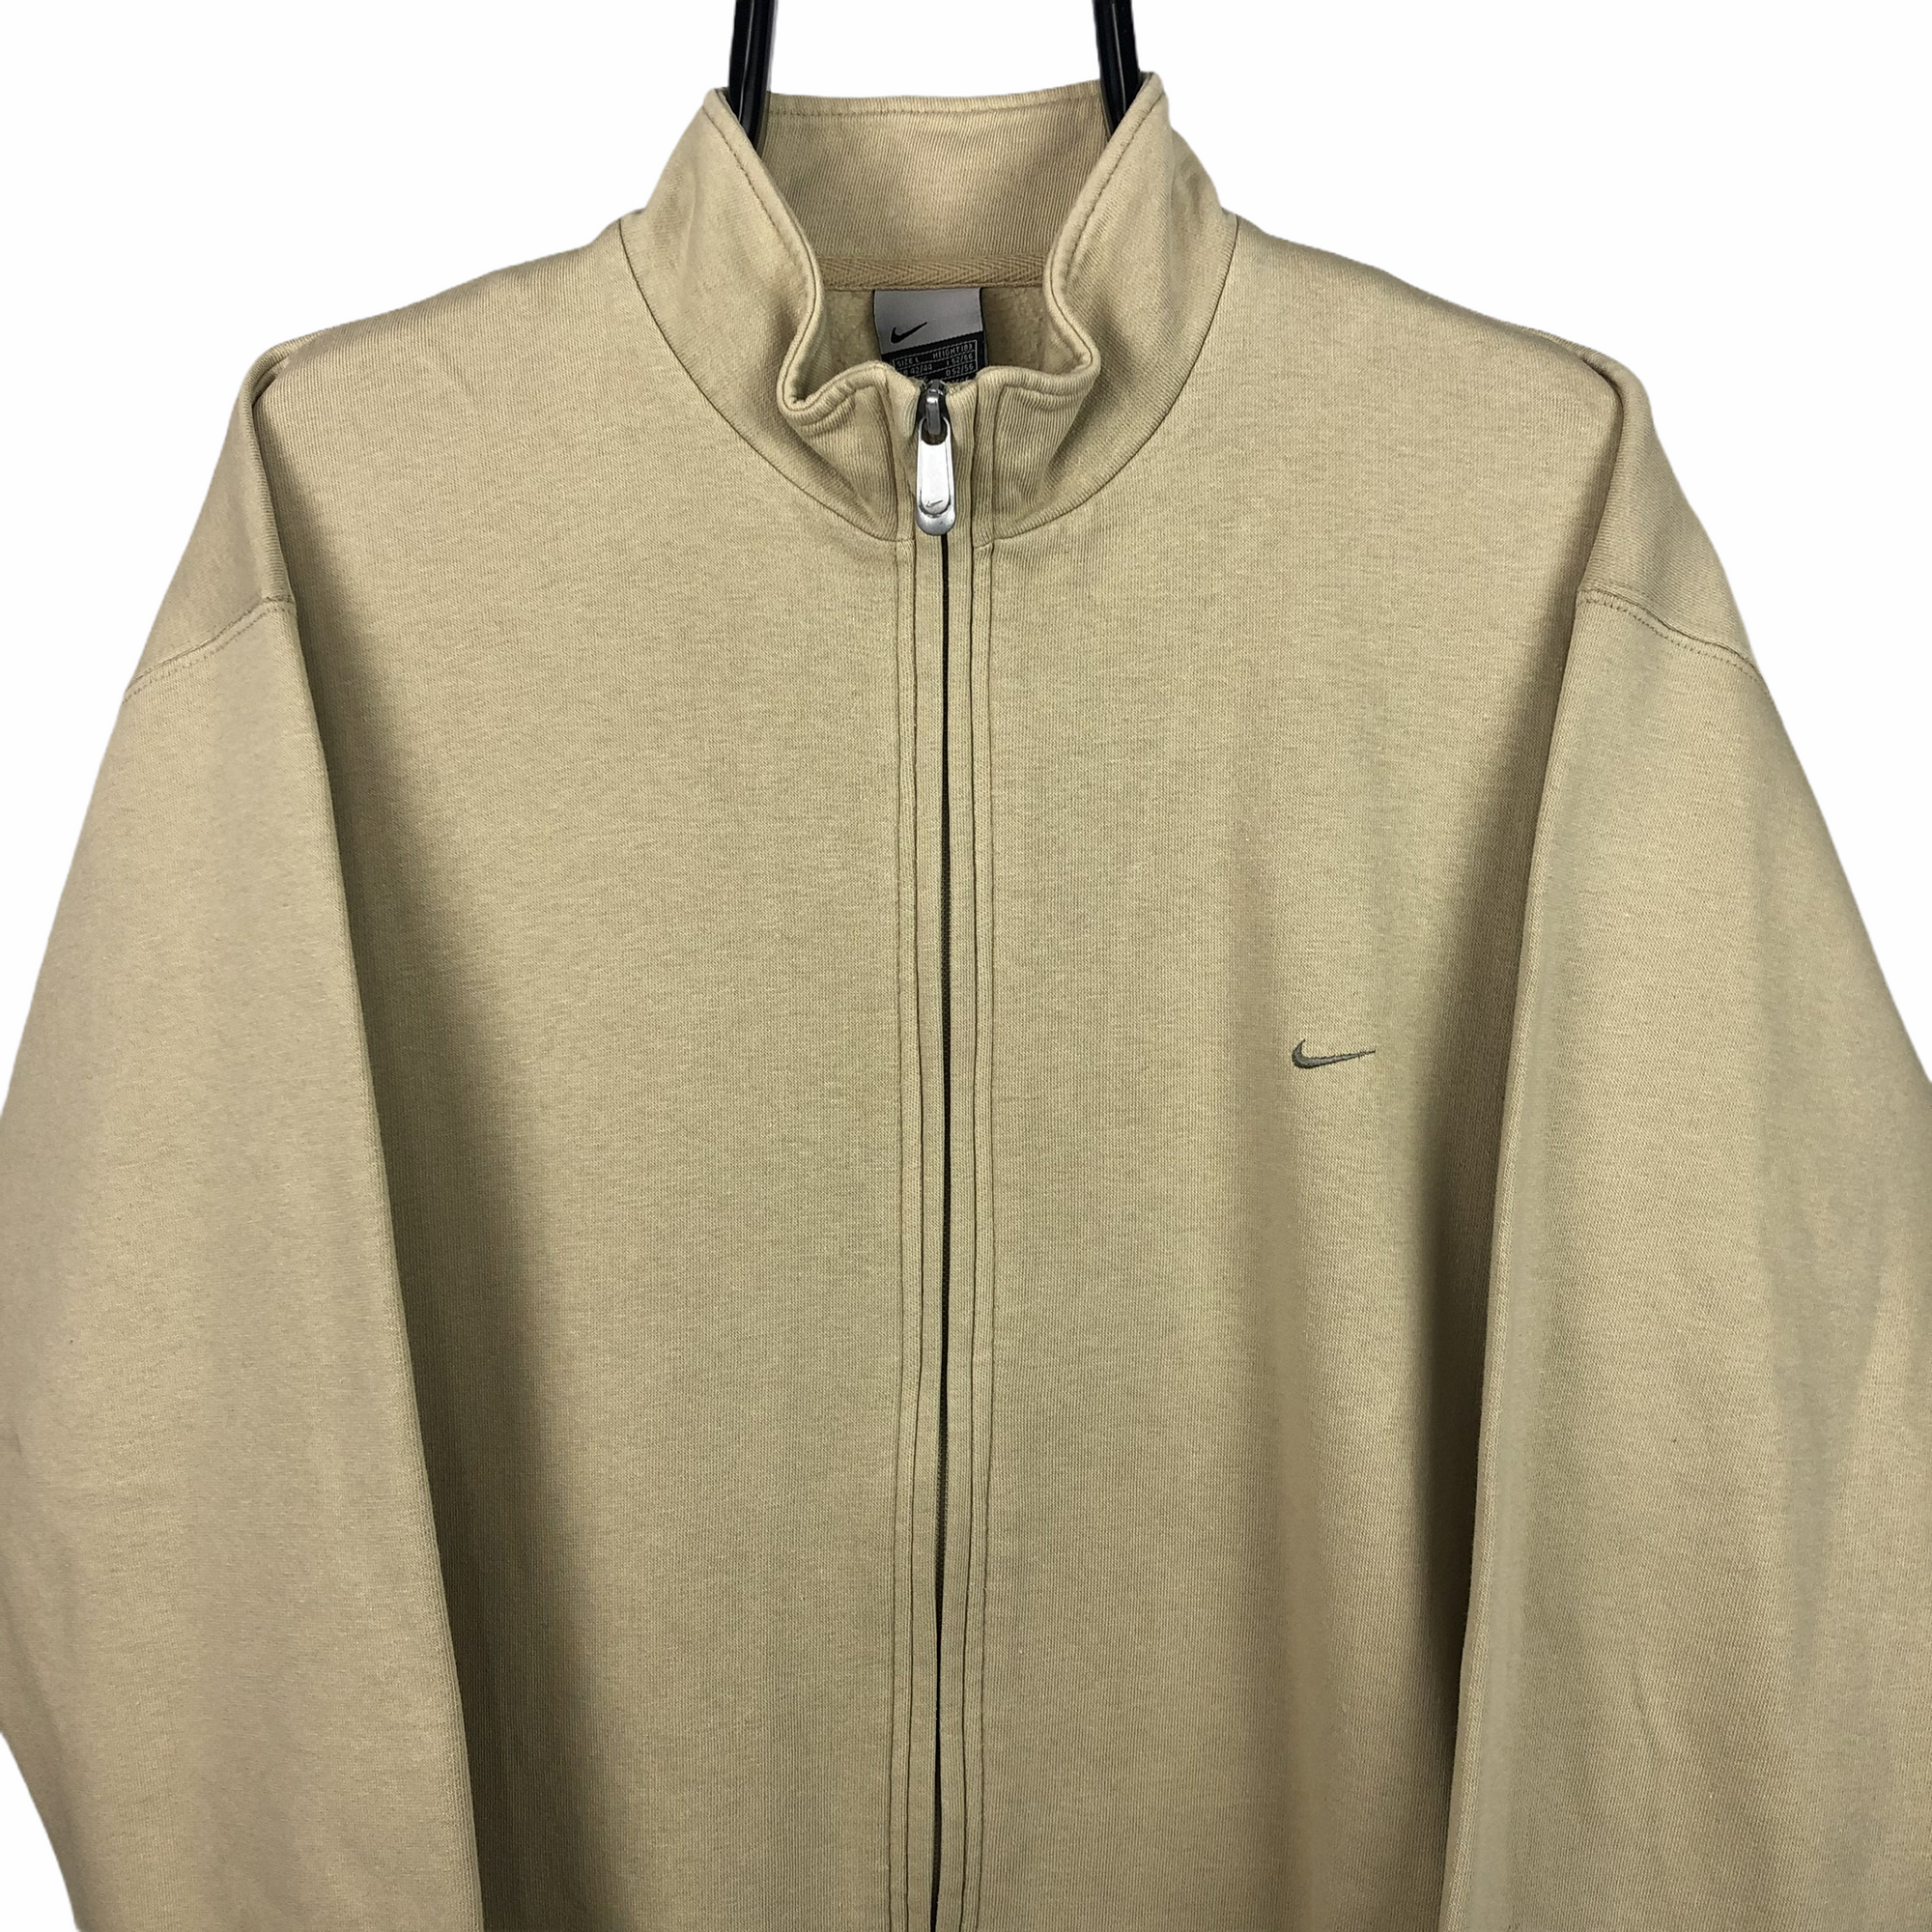 Vintage Nike Zip Up Sweatshirt in Beige - Men's Large/Women's XL